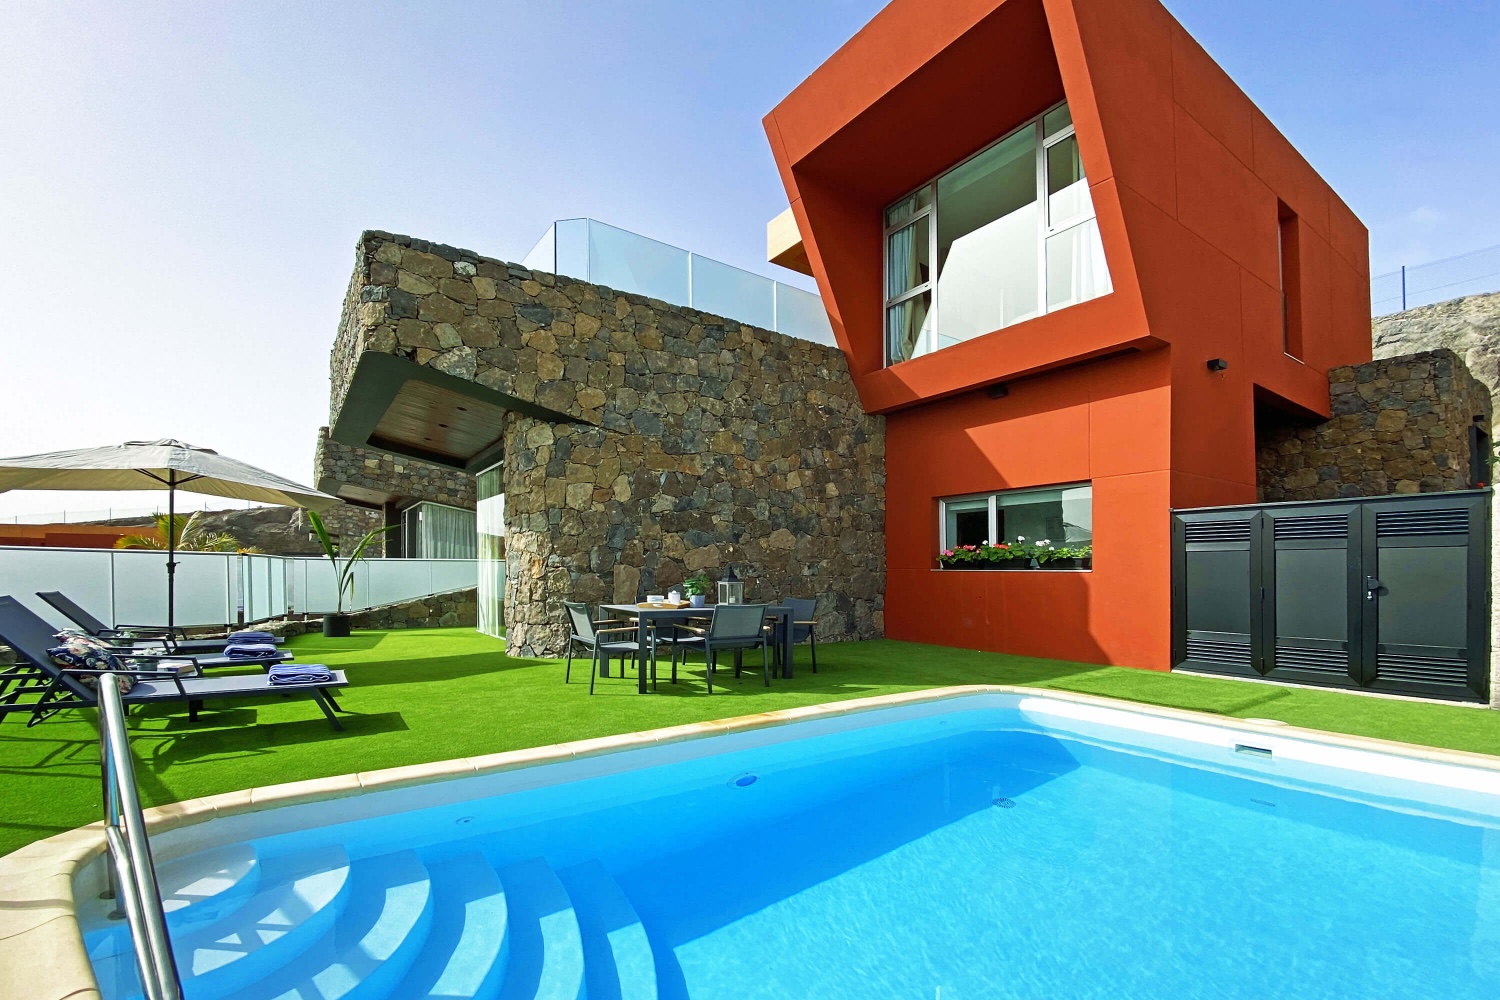 NEUERÖFFNUNG: Moderne und helle Villa, komplett ausgestattet, perfekt, um das gute Wetter im Süden von Gran Canaria in einer einzigartigen Umgebung zu genießen.